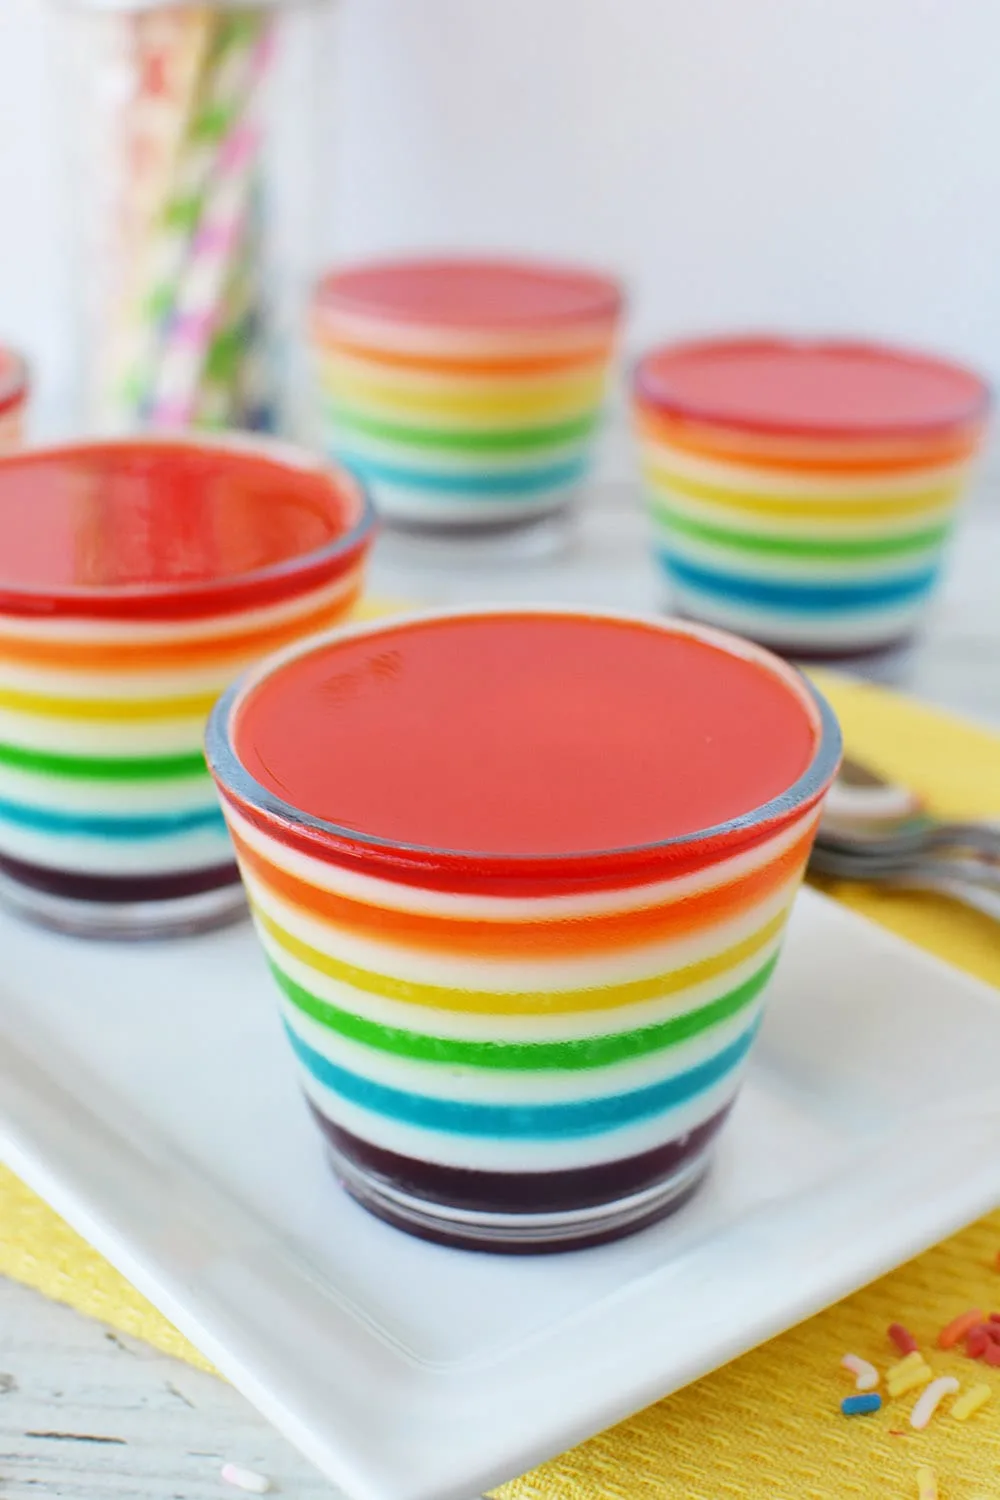 Rainbow Jell-o cups on a table.